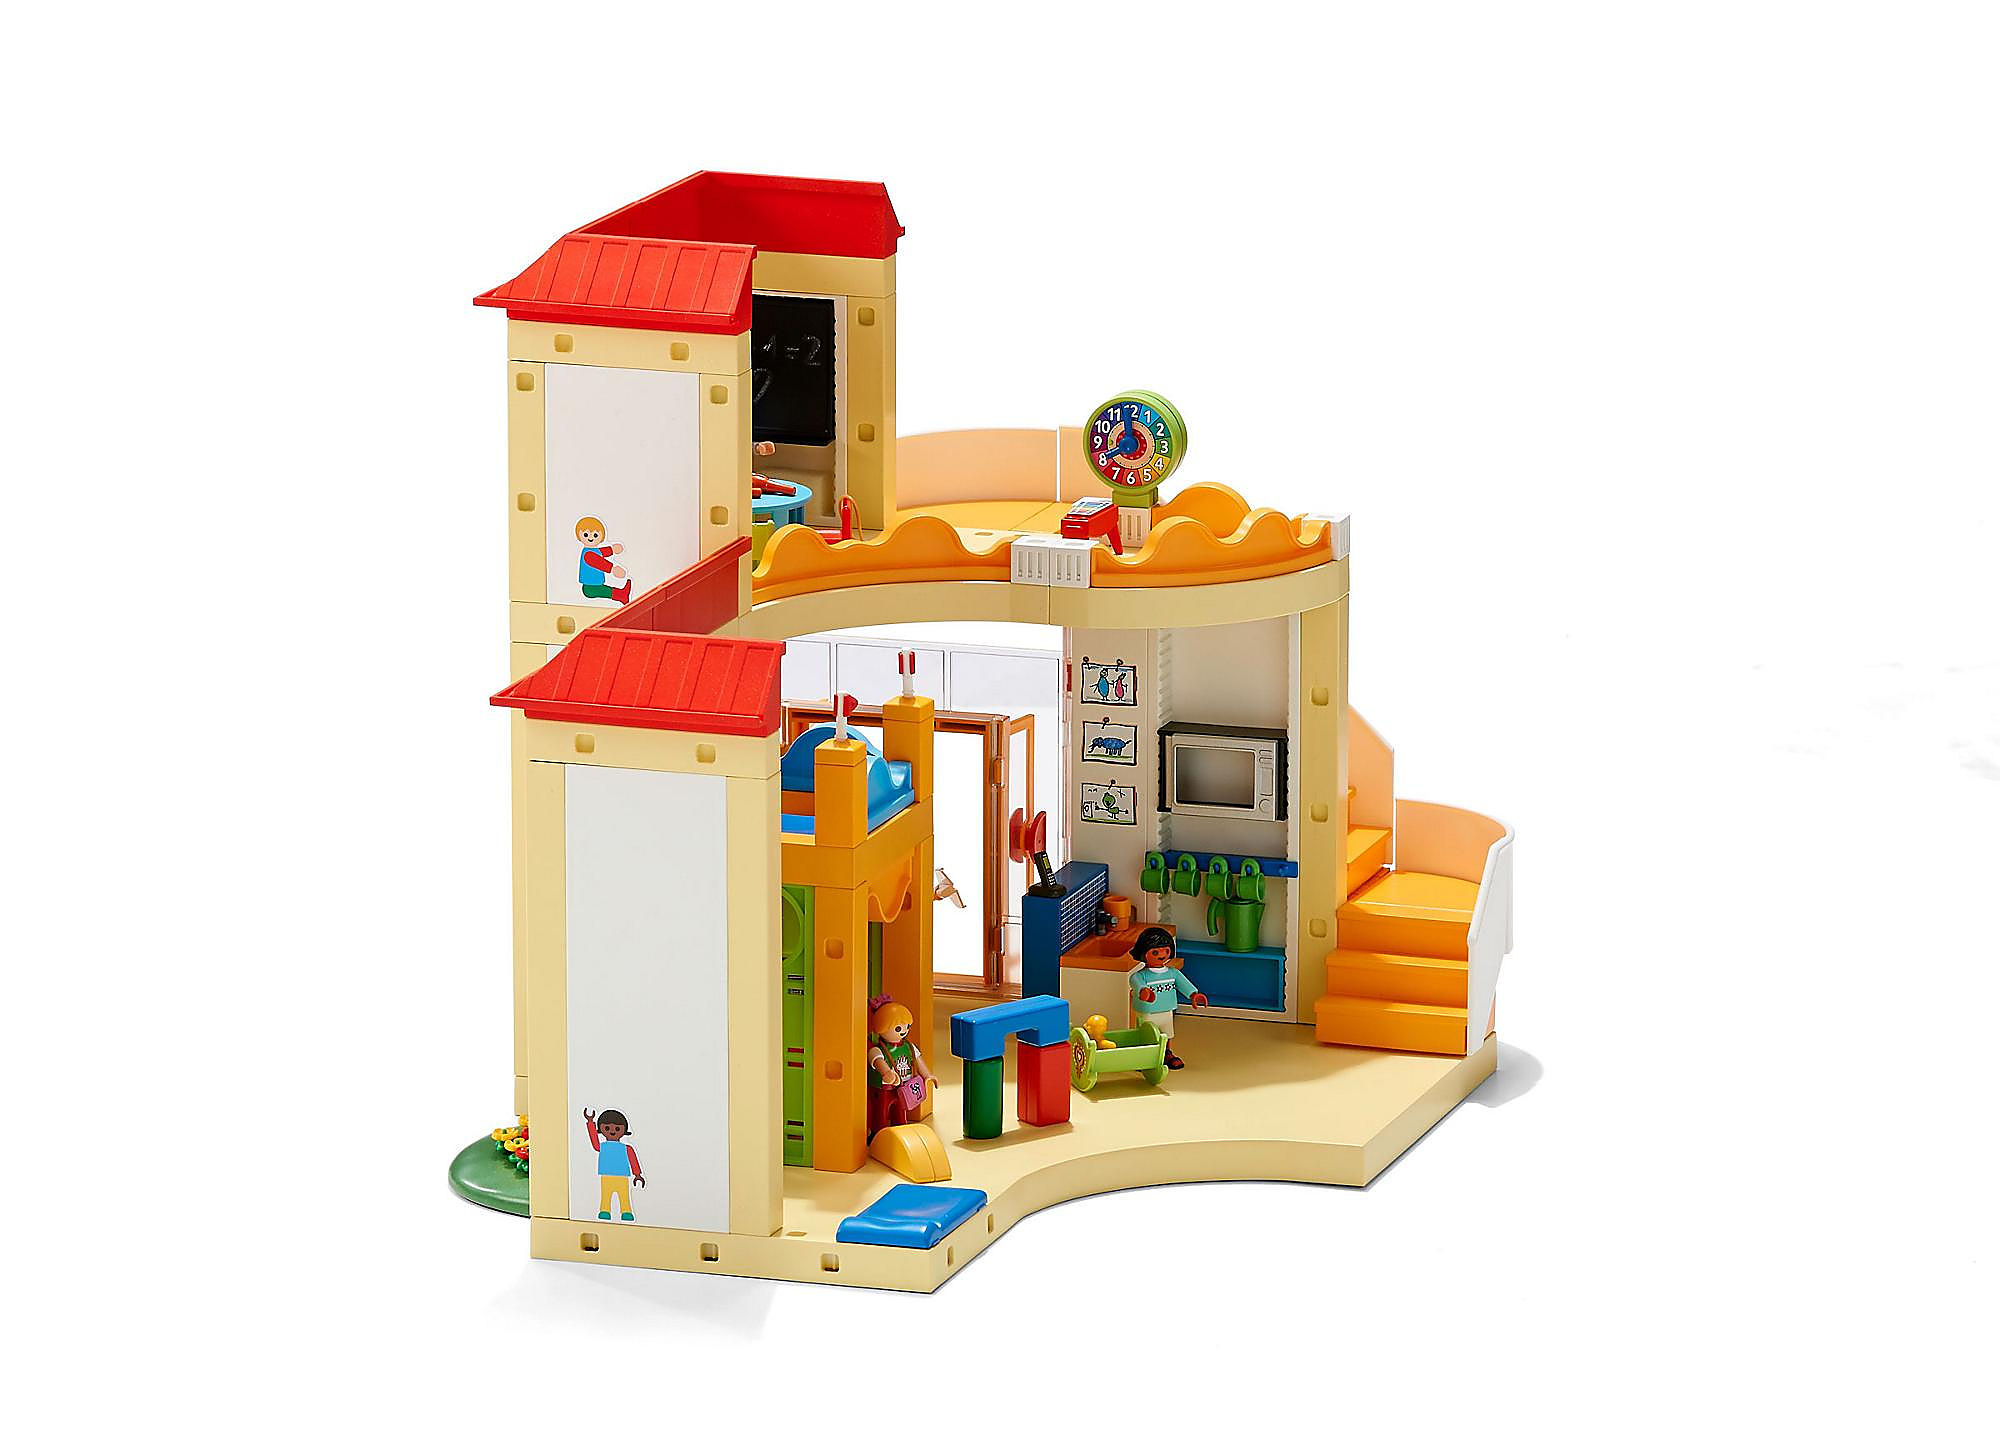 Playmobil City Life 5567 Garderie - Playmobil